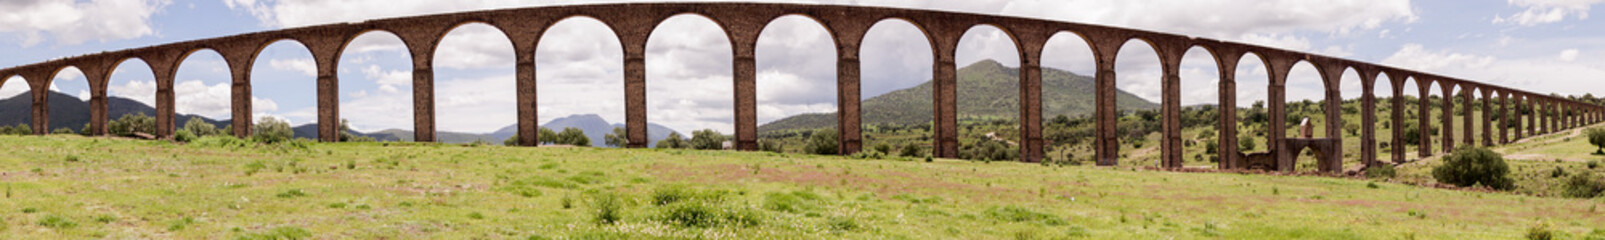 Aqueduct Tembleque uneso